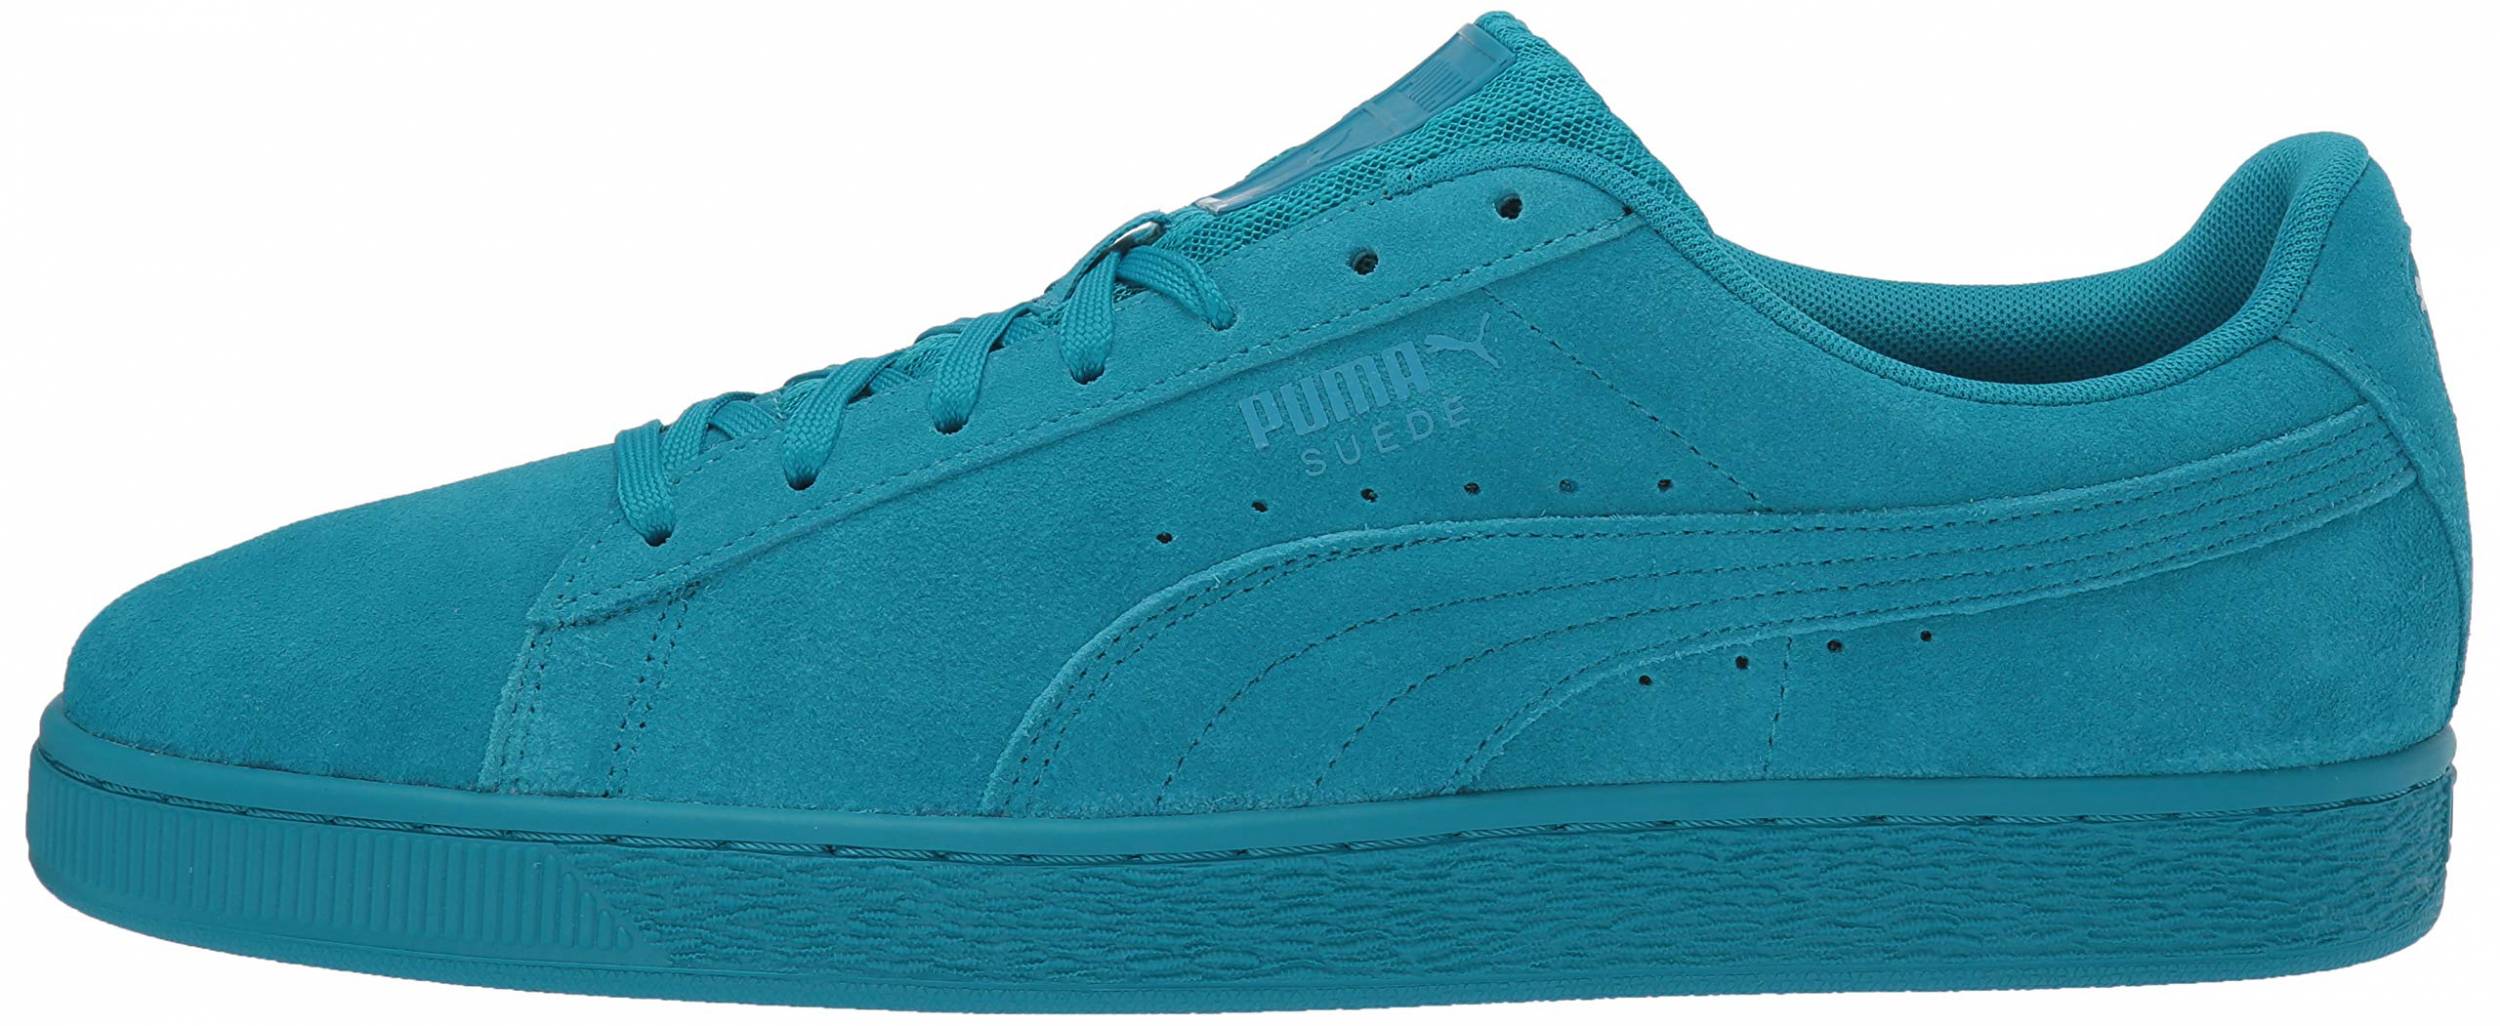 puma shoes blue colour